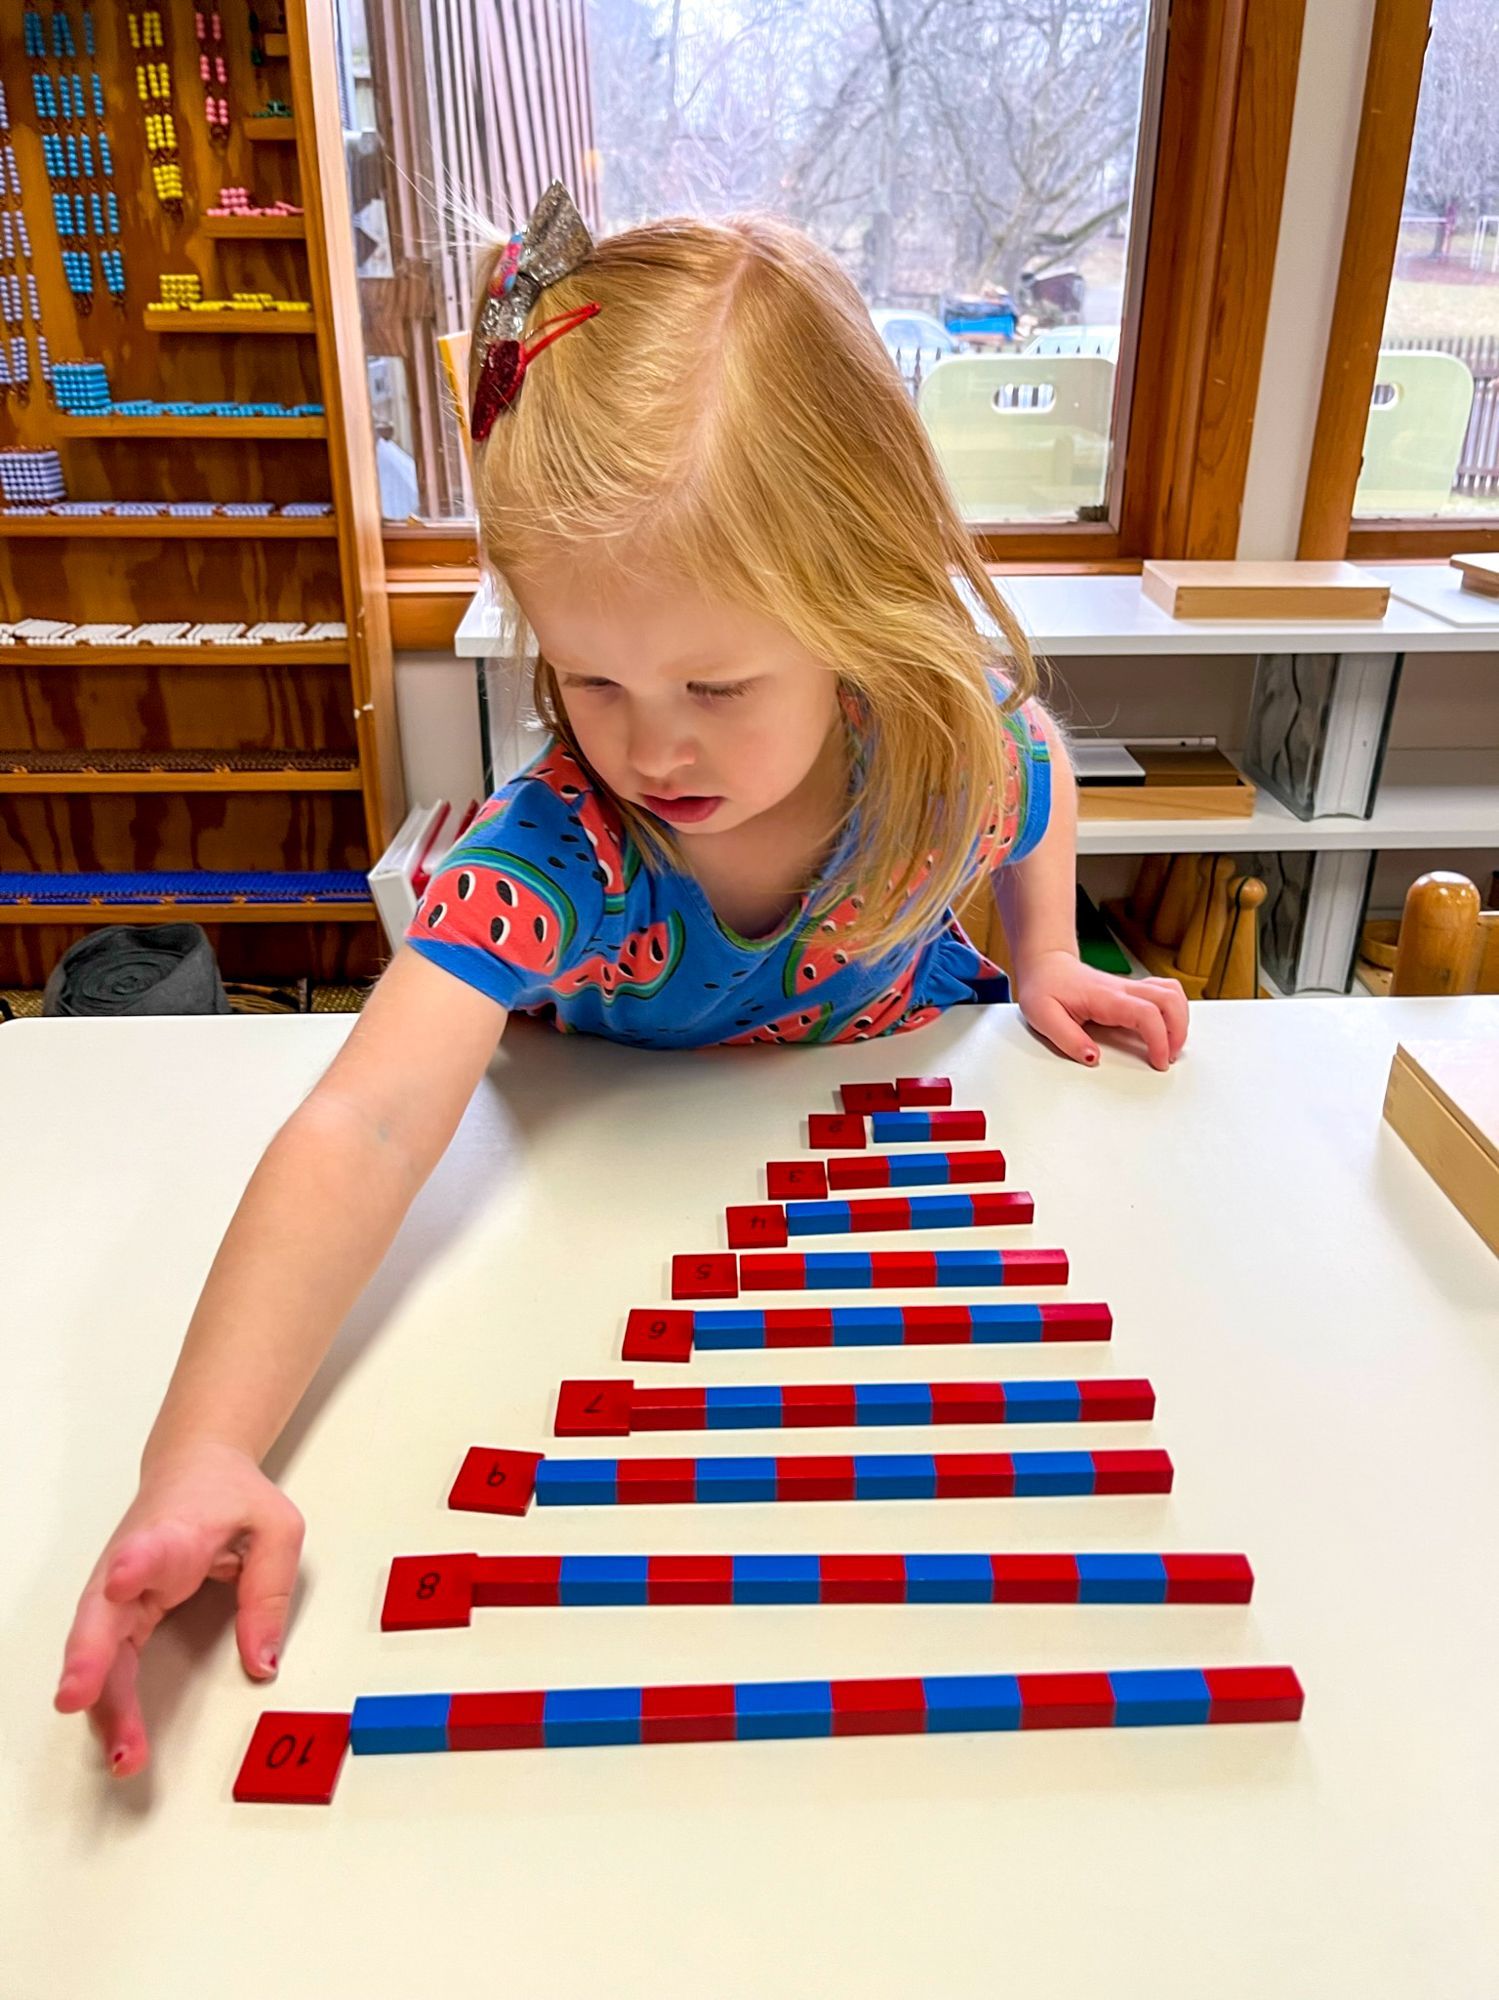 Child working with Montessori math materials